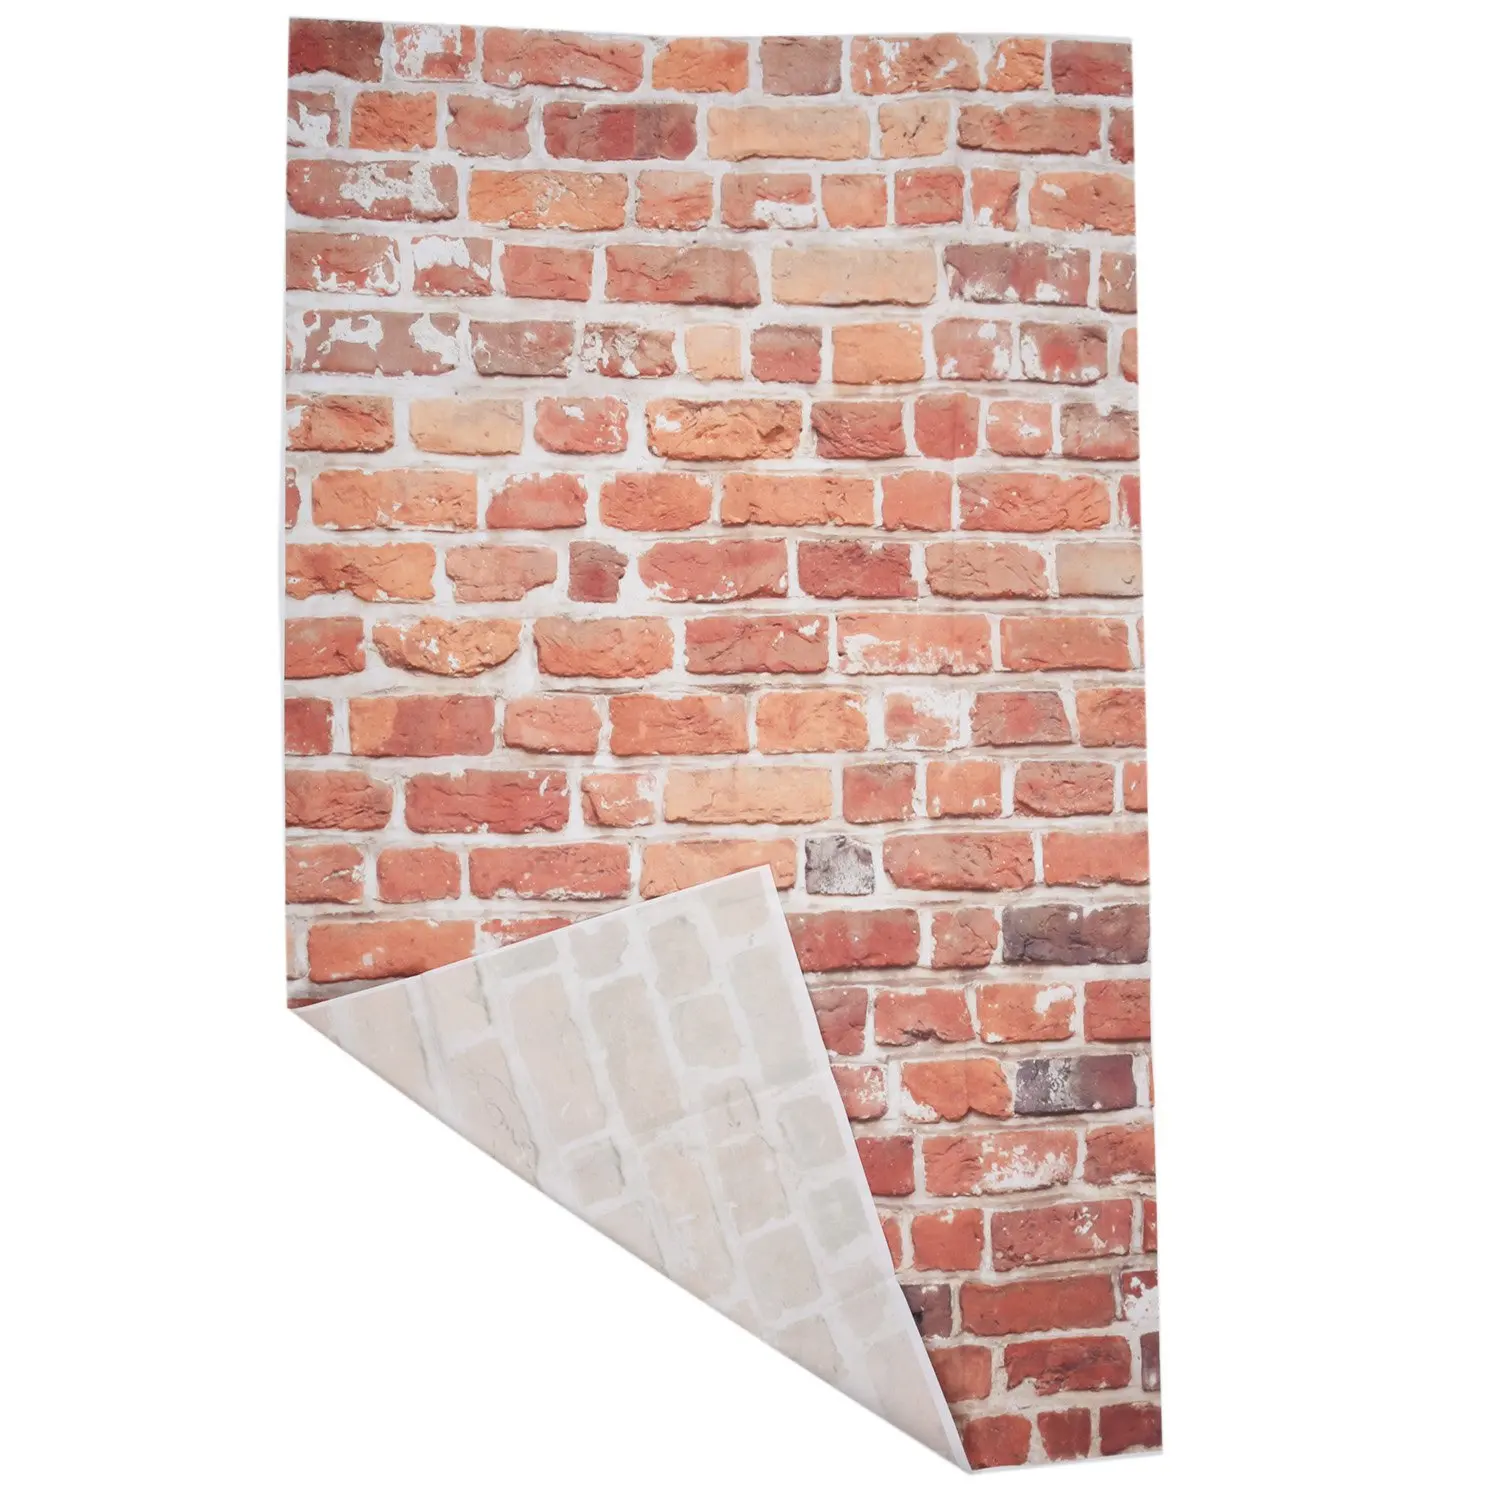 3x5ft Виниловая Винтажная Стена из красного кирпича, Студийный фон, реквизит для Фотосъемки